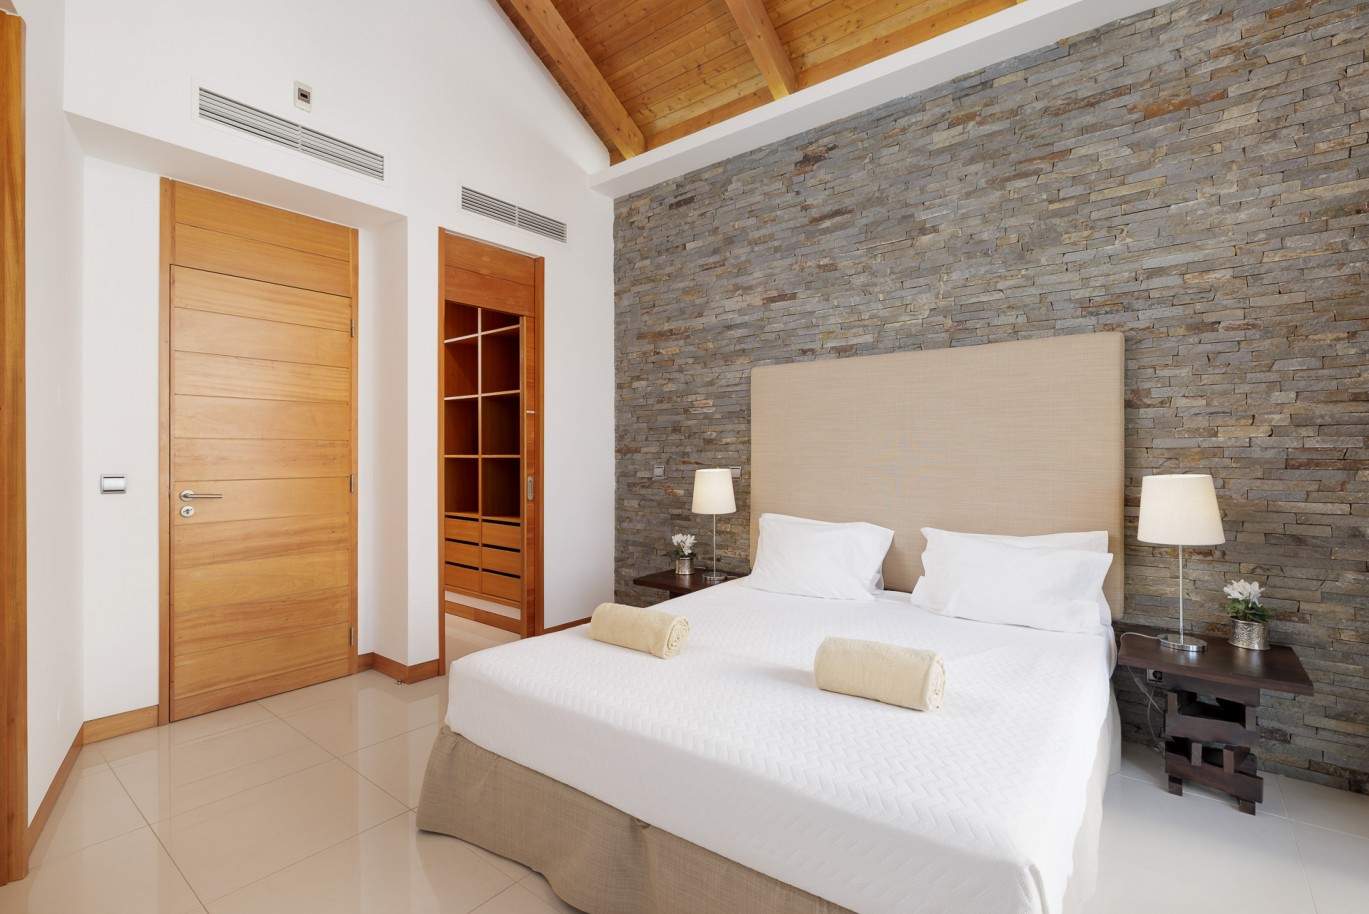 2 bedroom villa with pool, for sale in Vale do Lobo, Algarve_207349